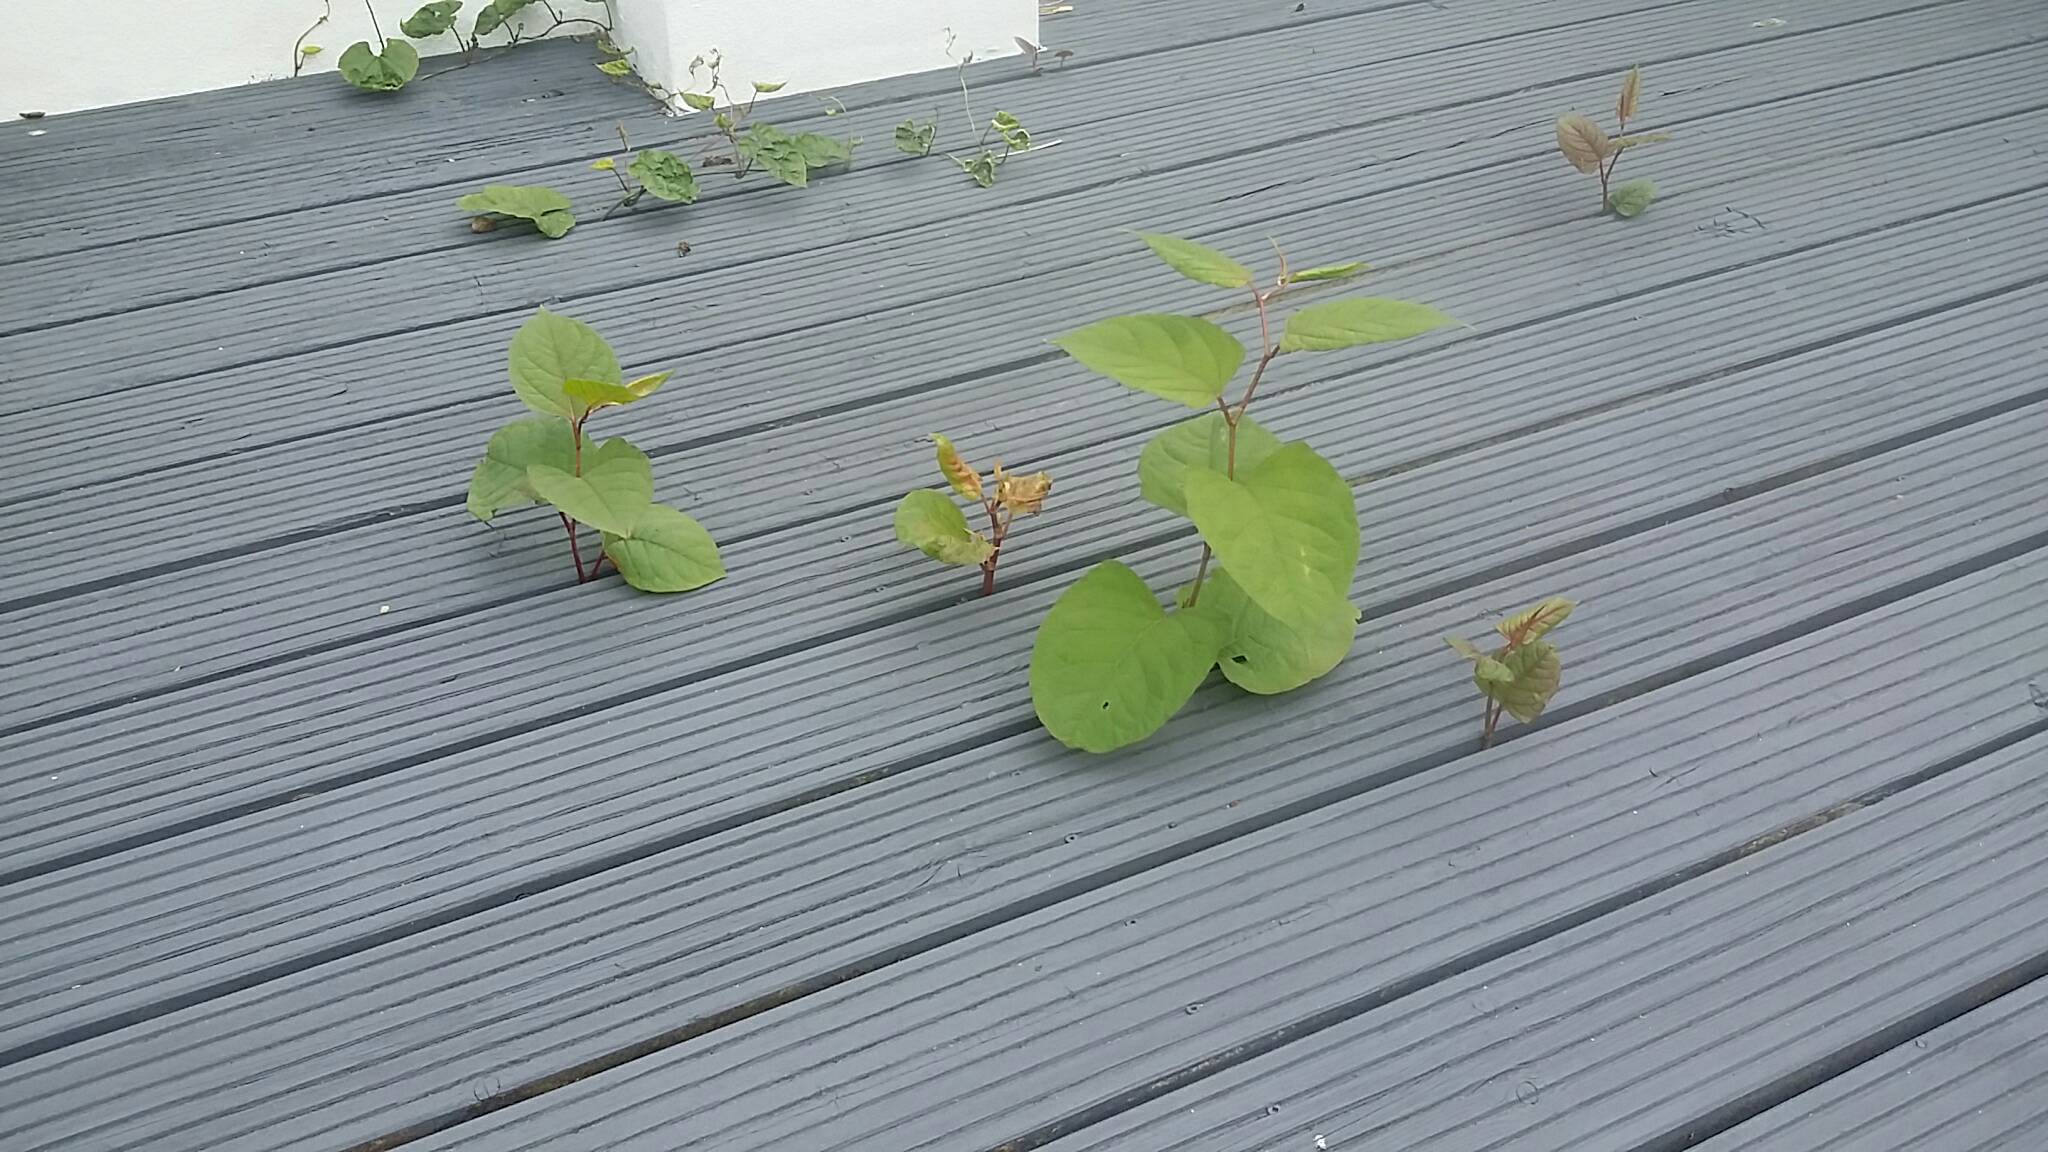 Japanese knotweed growing through decking